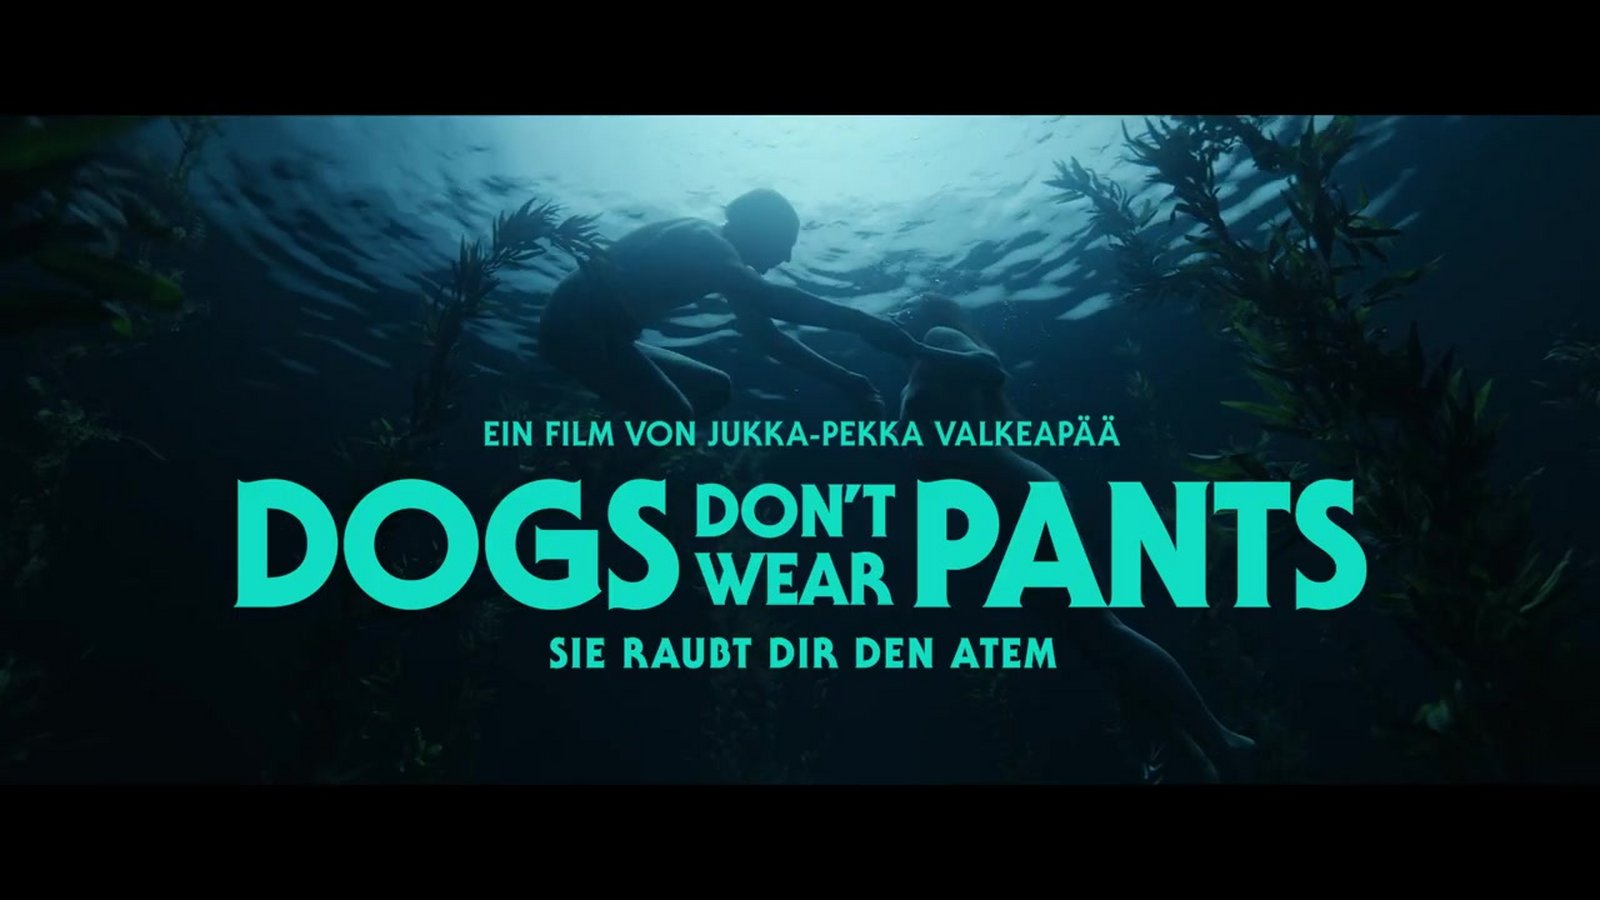 Amazon.de: Dogs Don't Wear Pants ansehen | Prime Video